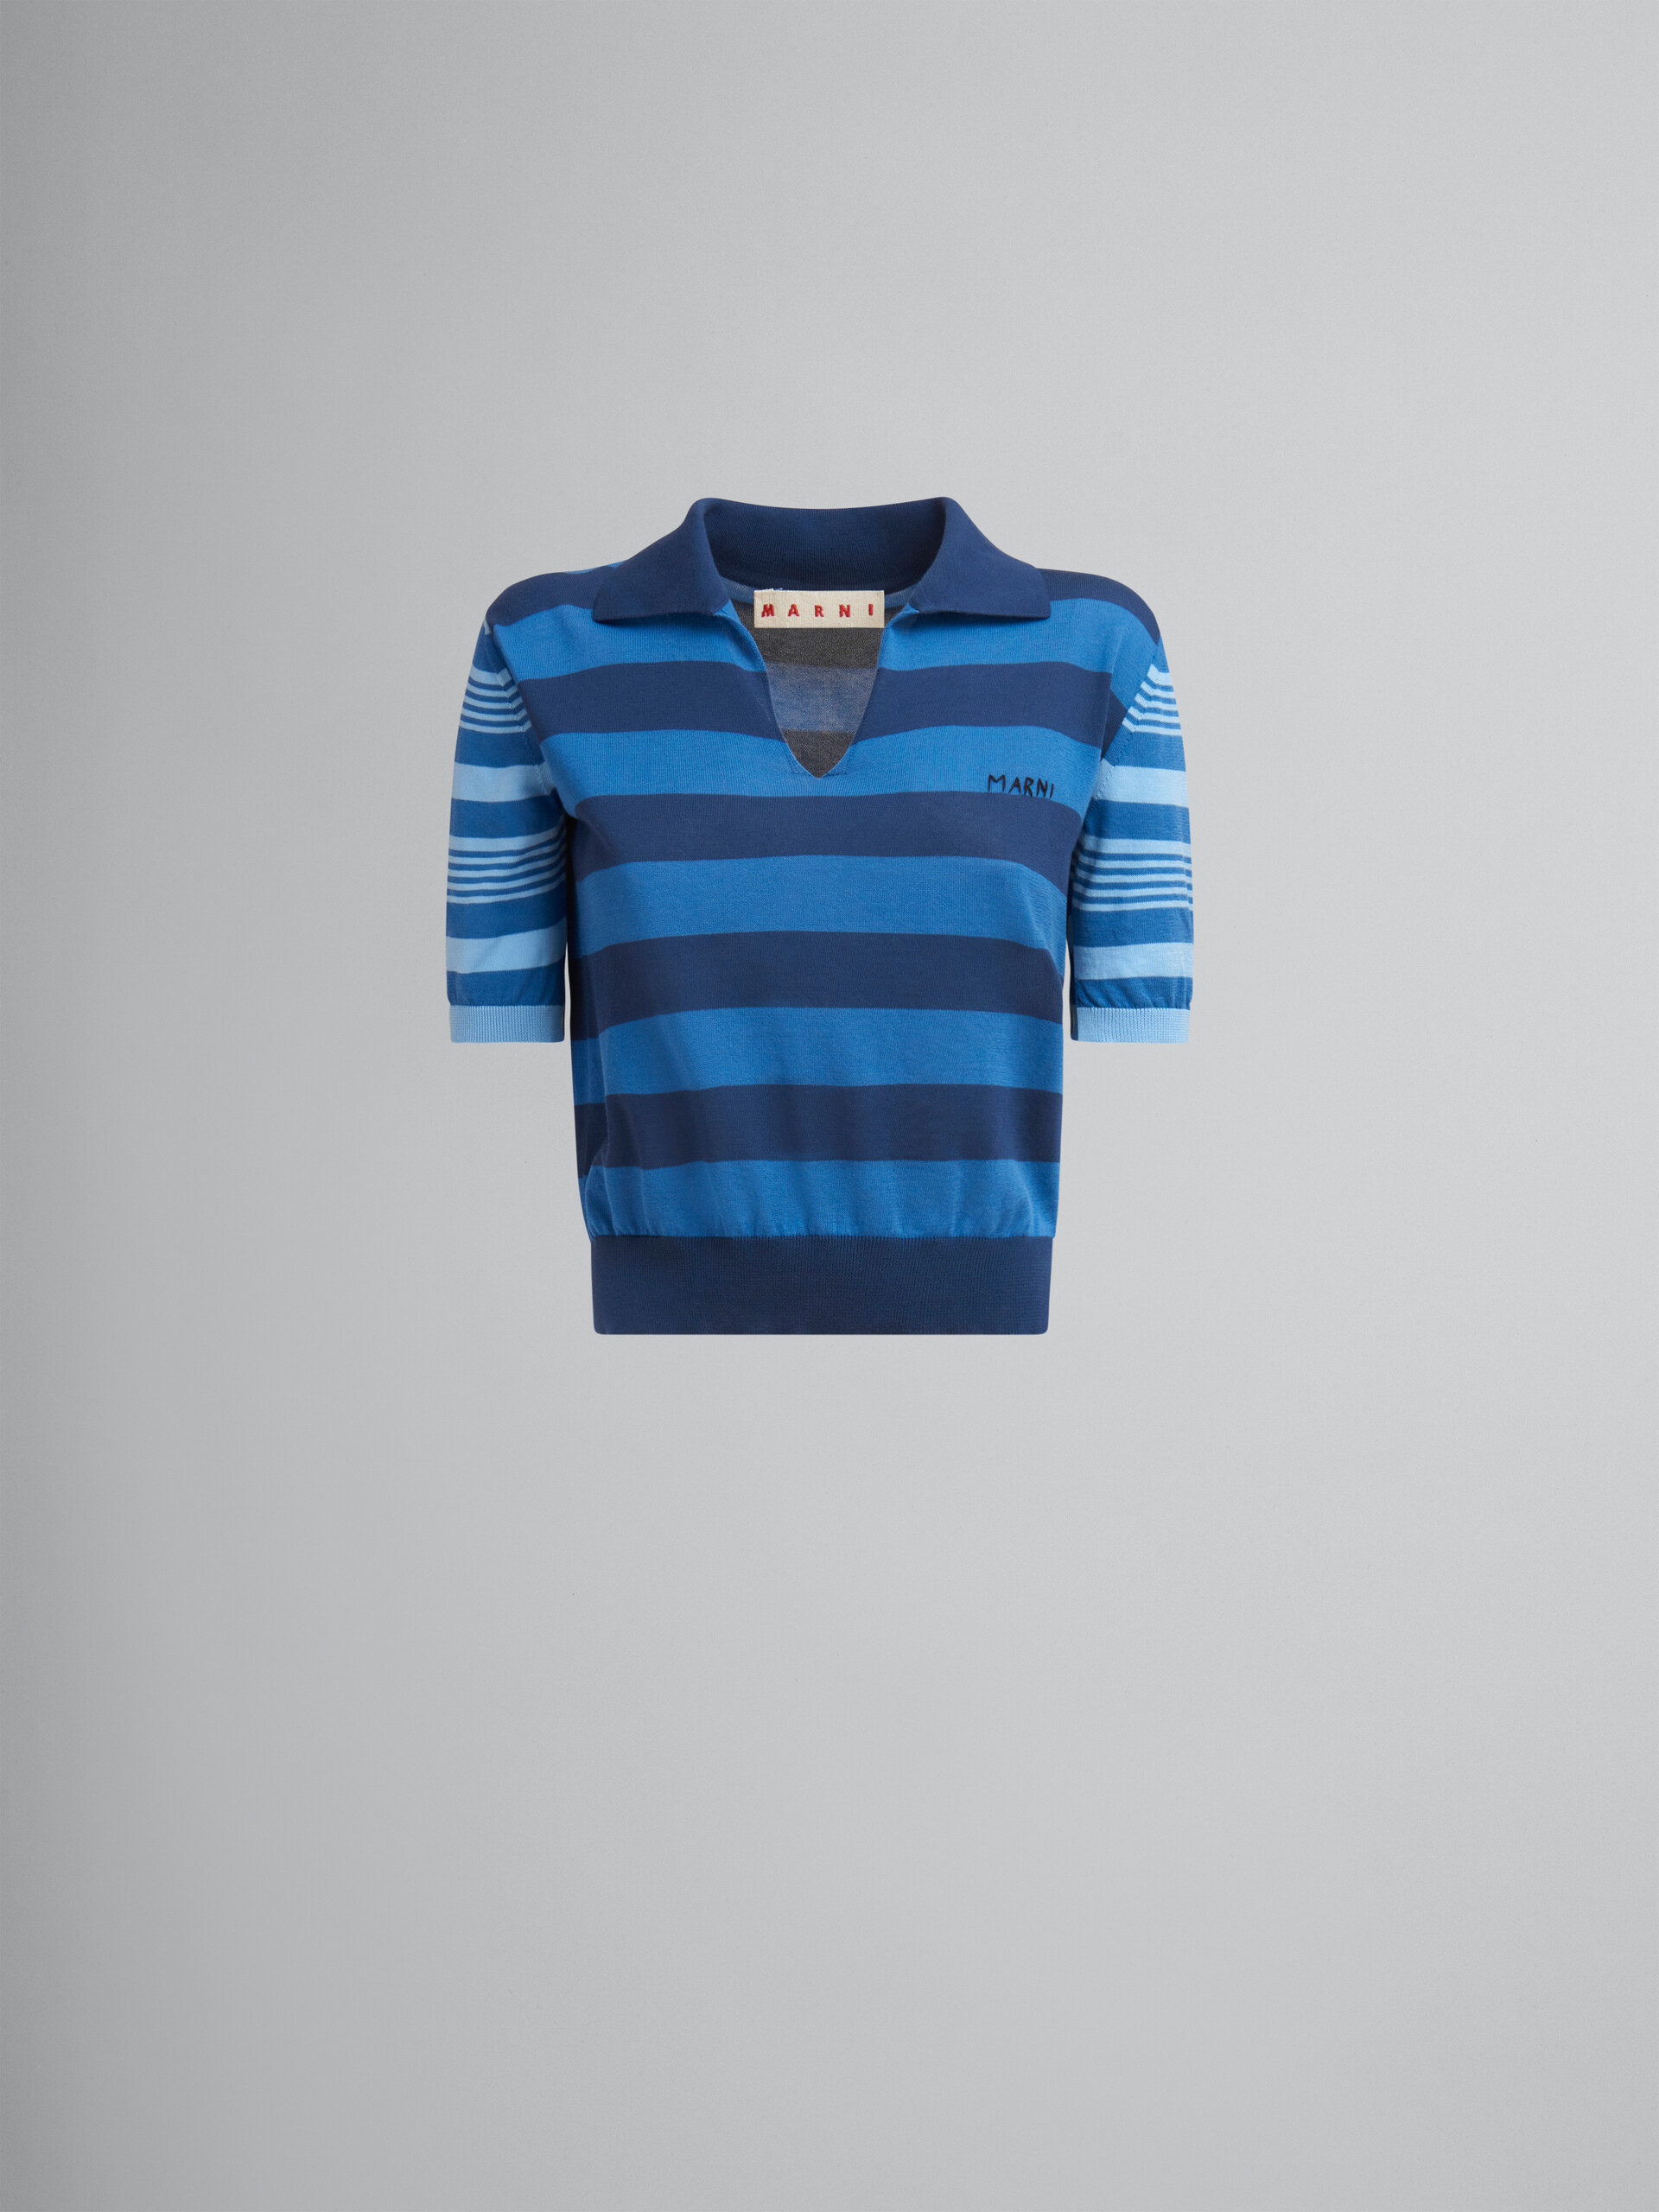 Jersey de manga corta azul de algodón ligero con rayas en contraste - Camisas - Image 1